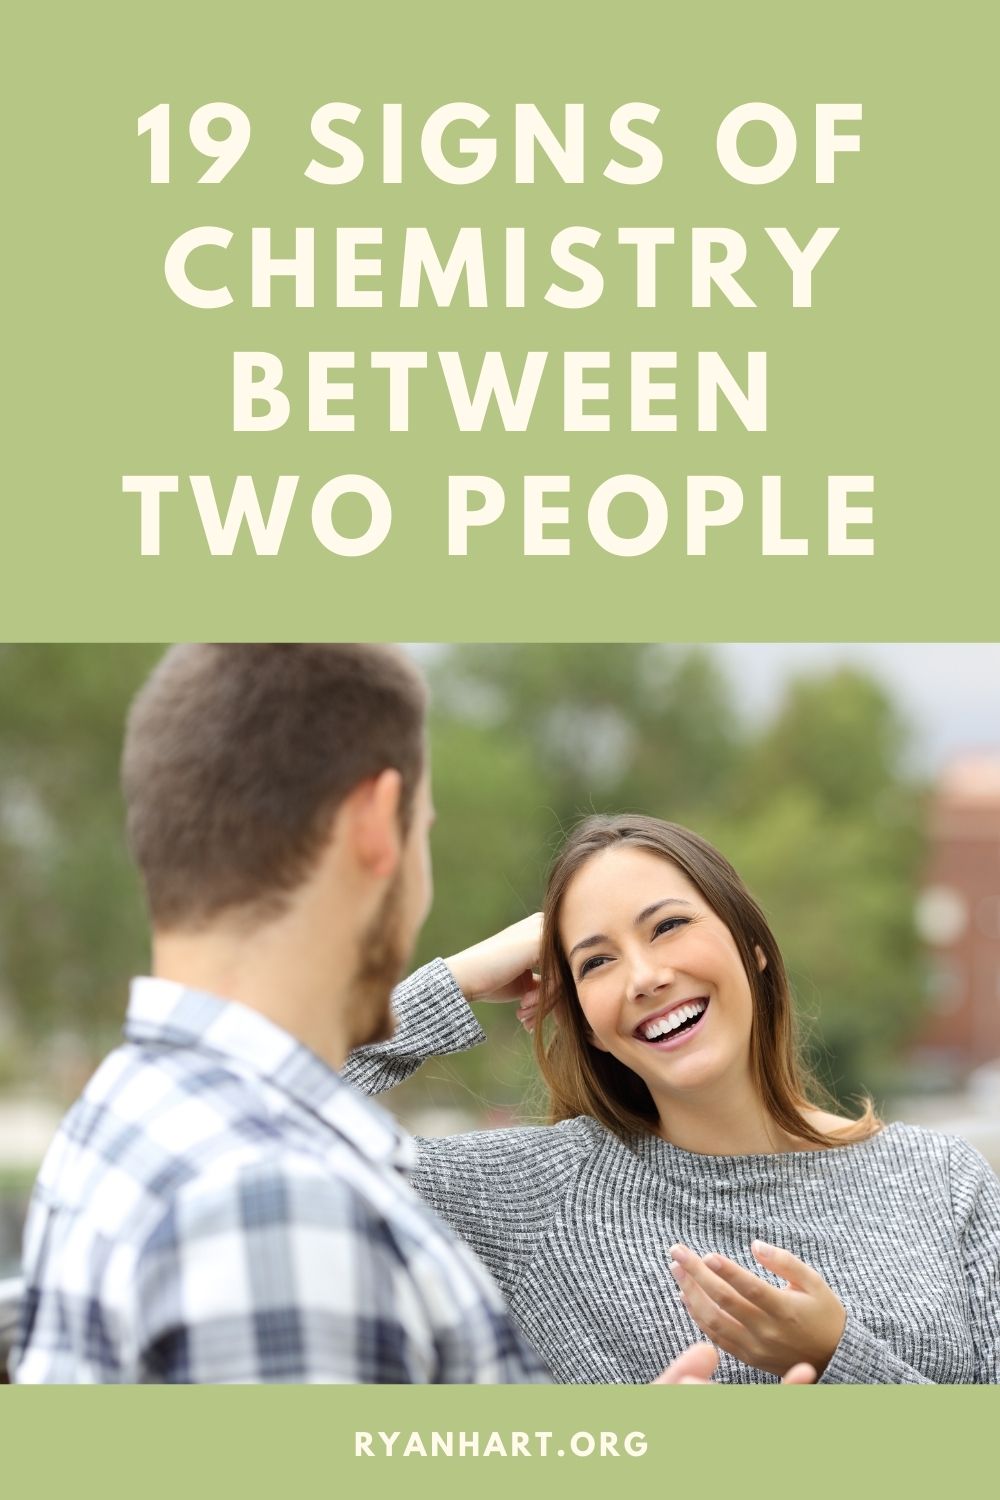  दो लोगों के बीच रसायन विज्ञान के 19 लक्षण